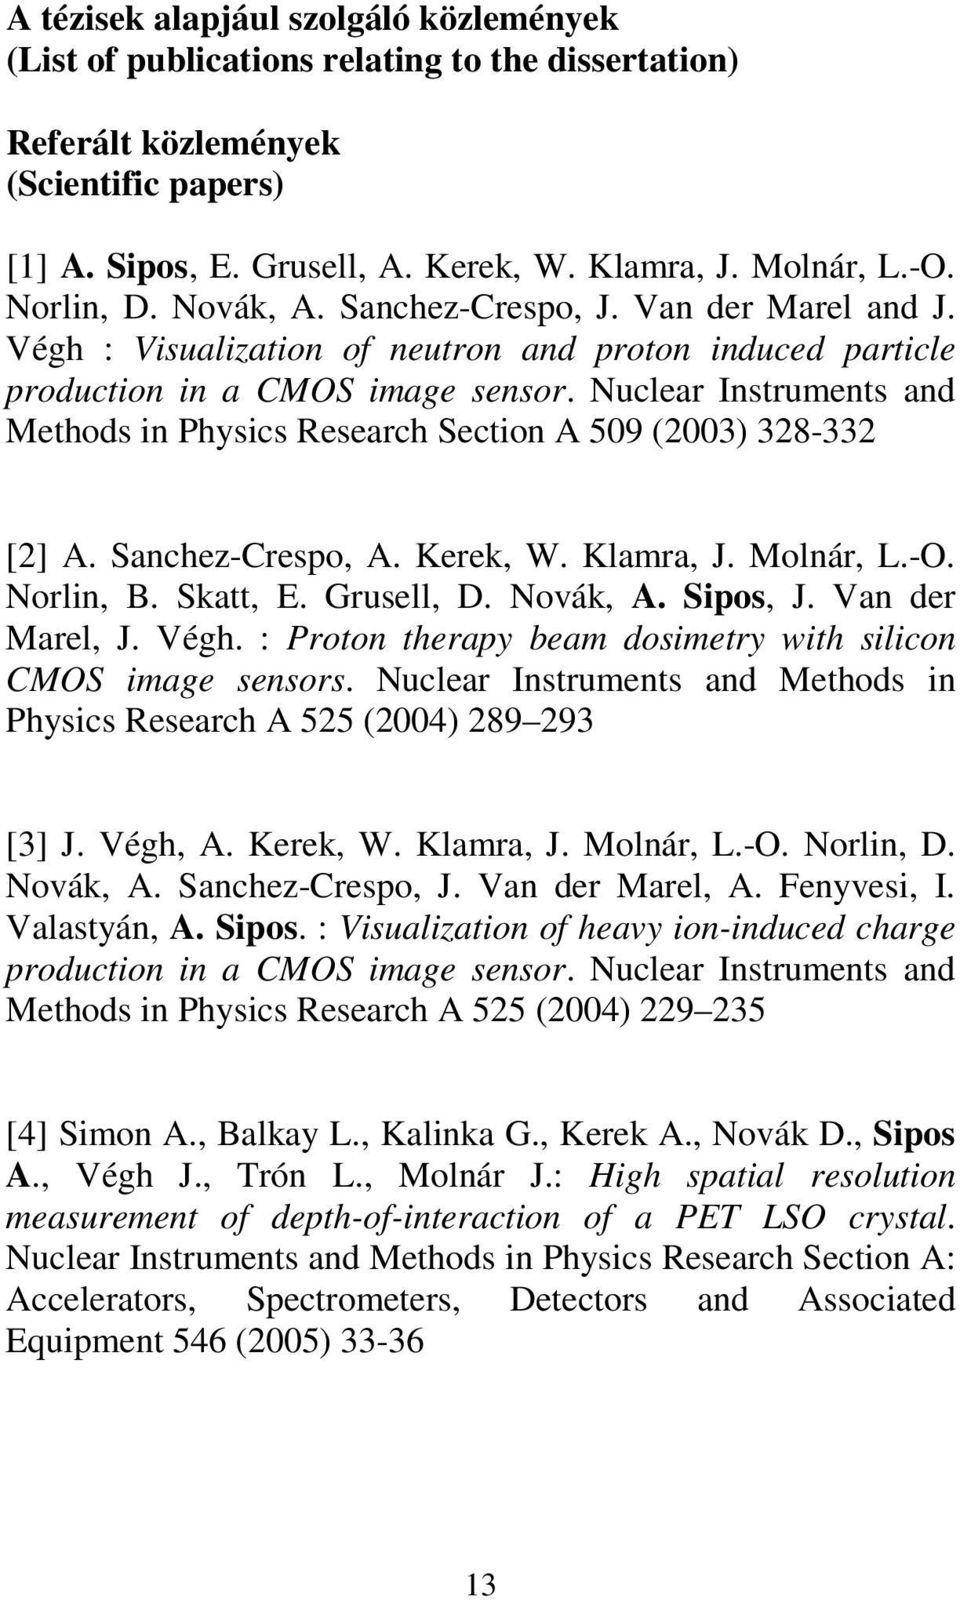 Nuclear Instruments and Methods in Physics Research Section A 509 (2003) 328-332 [2] A. Sanchez-Crespo, A. Kerek, W. Klamra, J. Molnár, L.-O. Norlin, B. Skatt, E. Grusell, D. Novák, A. Sipos, J.